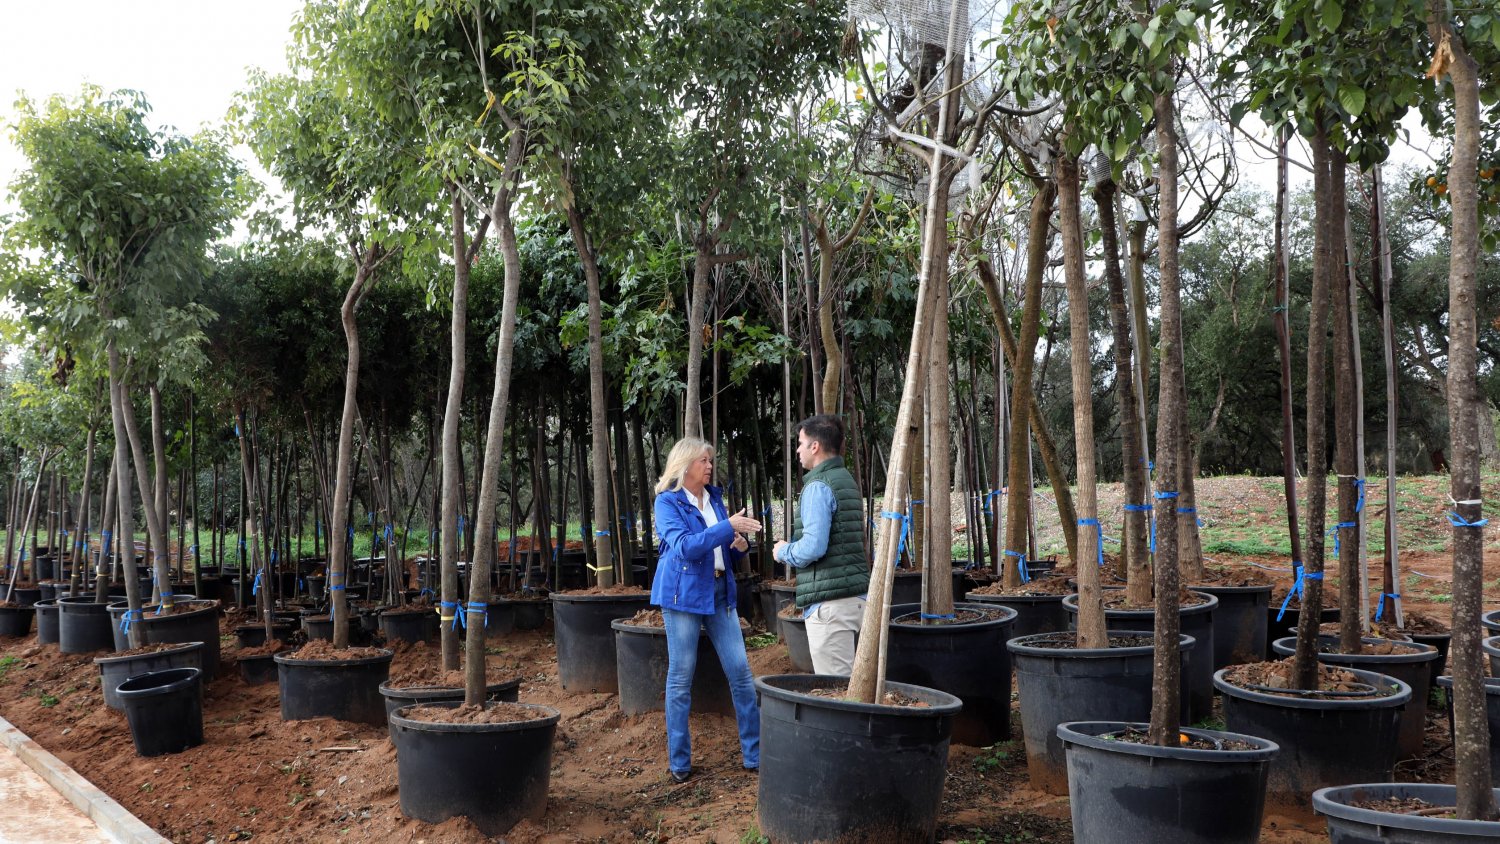 Marbella culminará su plan de arbolado con la plantación de más de 330 árboles en los próximos dos meses